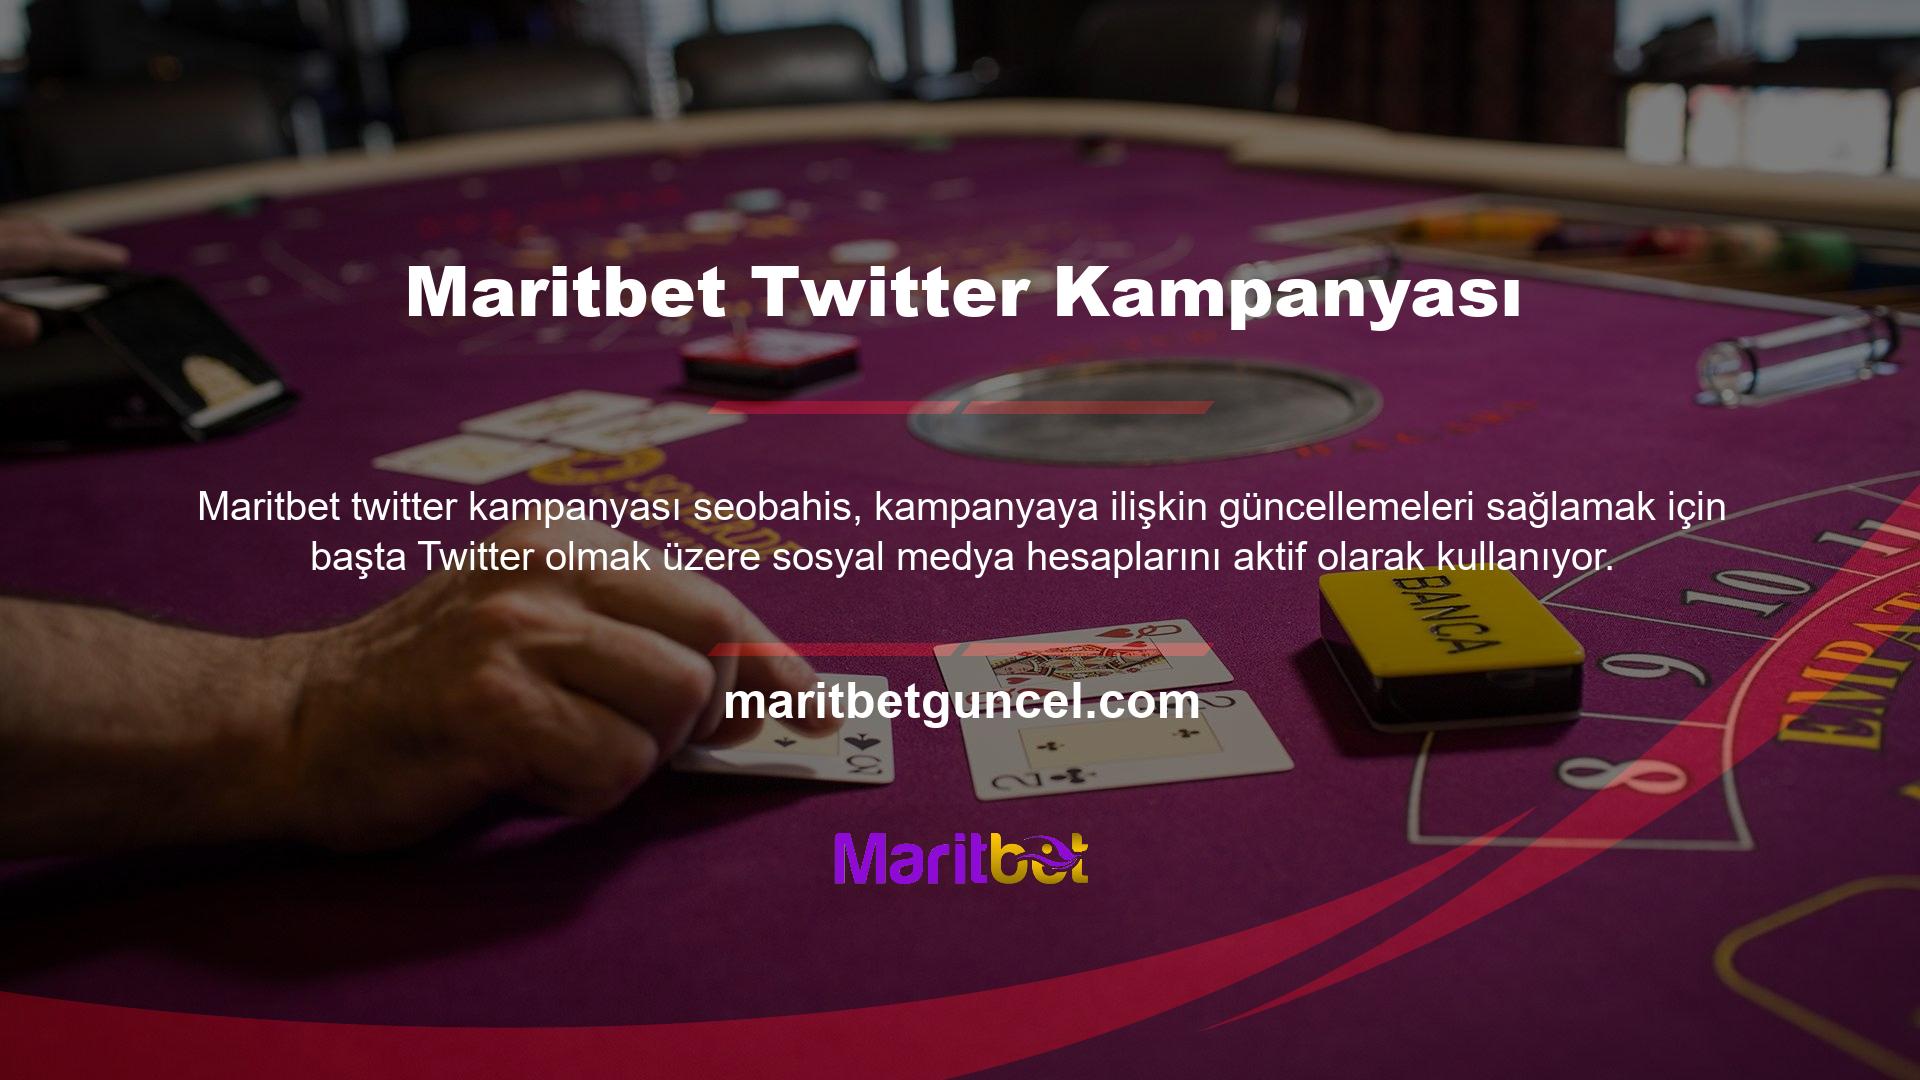 Bazı Twitter kullanıcıları Maritbet takip ediyor ve onun ilginç kampanyalarına karşı koyamıyor